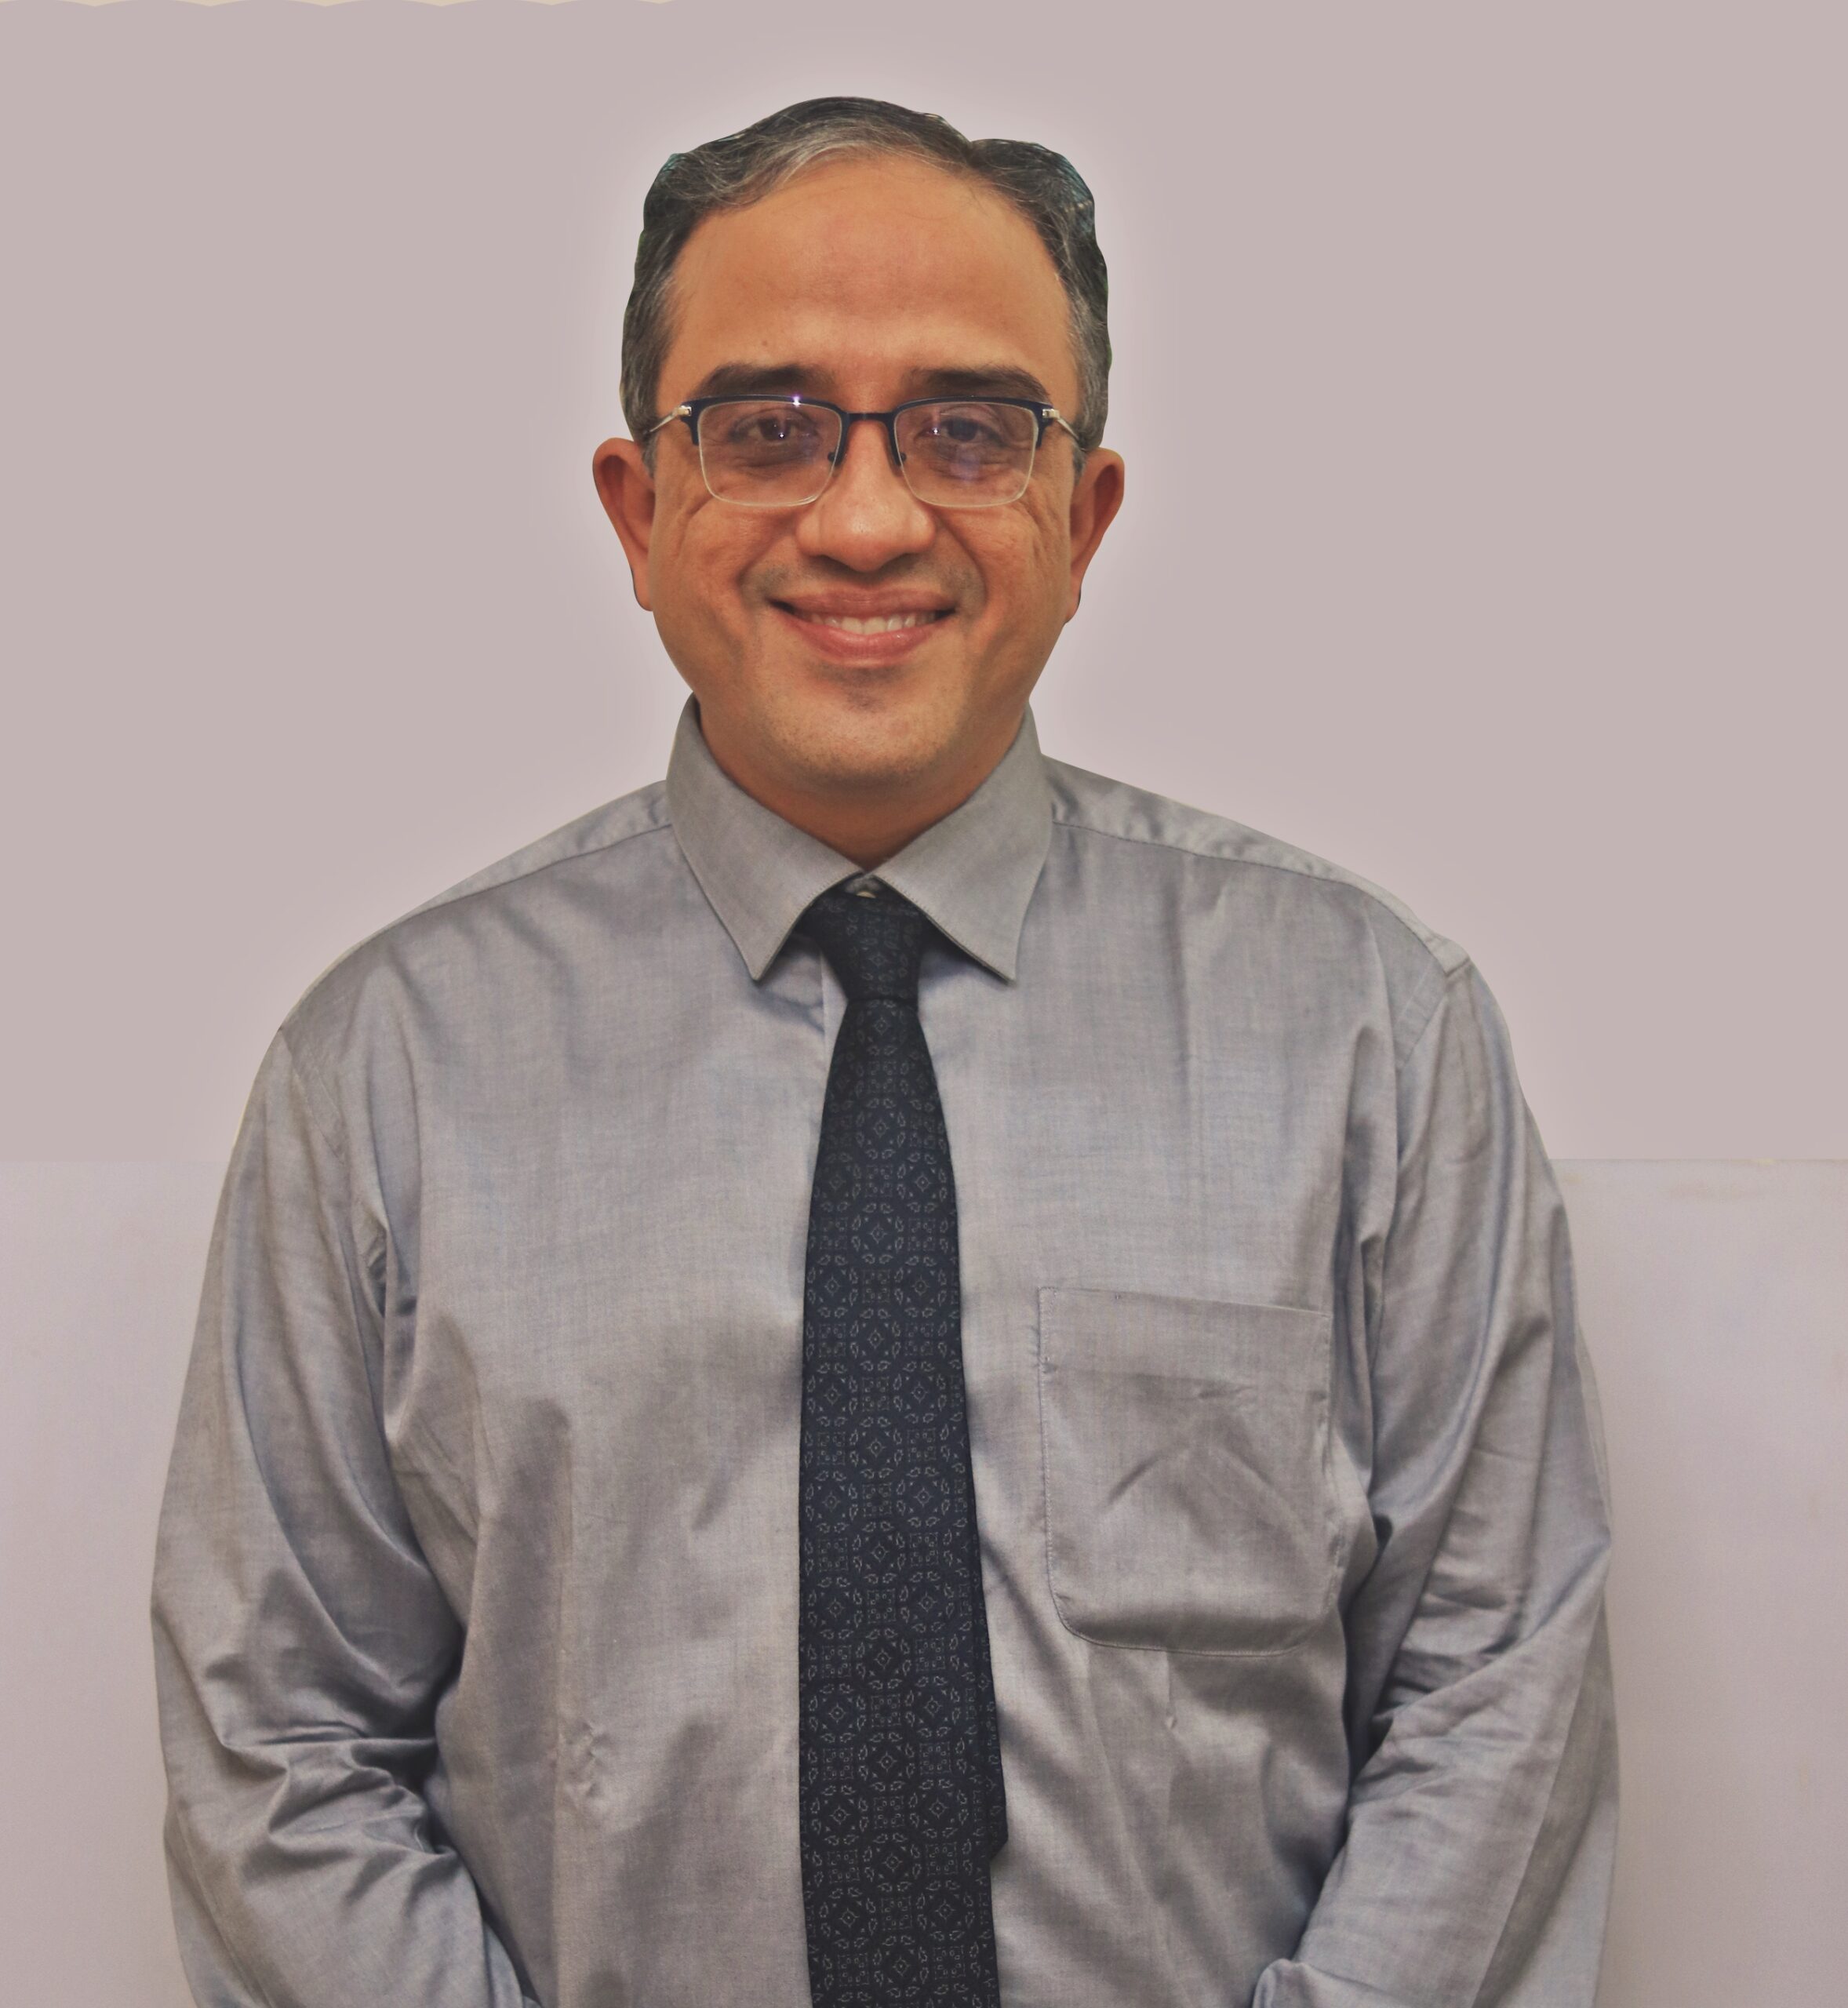 Dr. Atul Seth